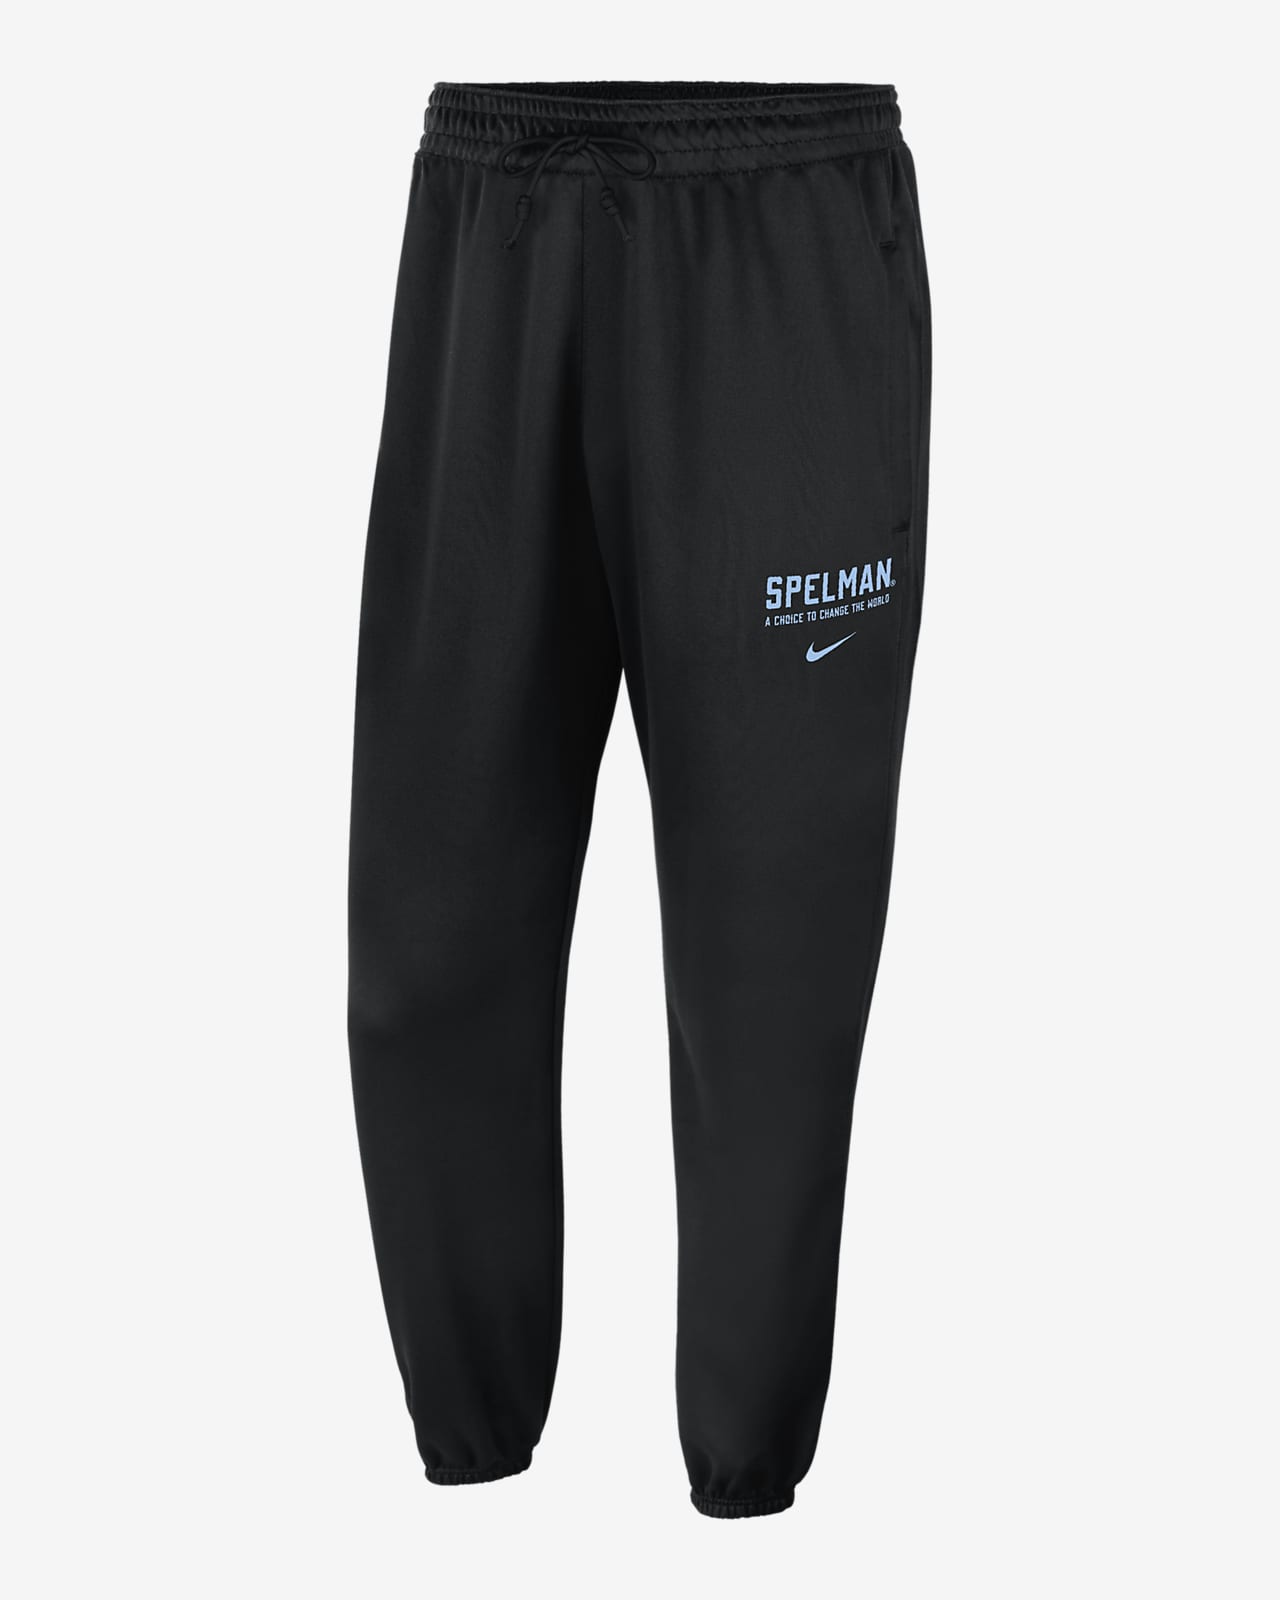 Spelman Standard Issue Men's Nike College Fleece Joggers